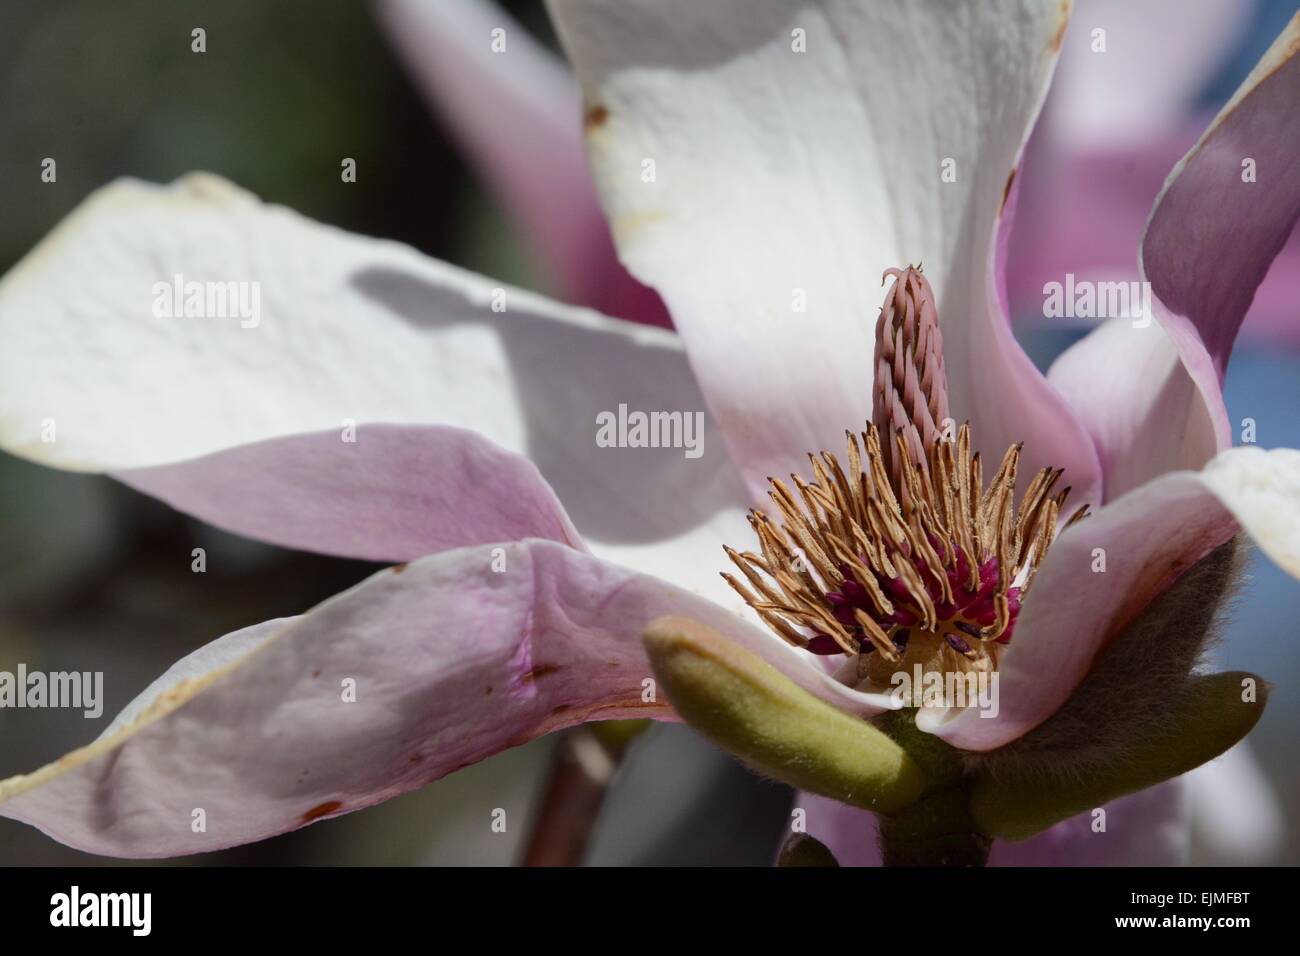 https://c8.alamy.com/comp/EJMFBT/magnolia-blossoms-inner-beauty-albuquerque-new-mexico-usa-EJMFBT.jpg